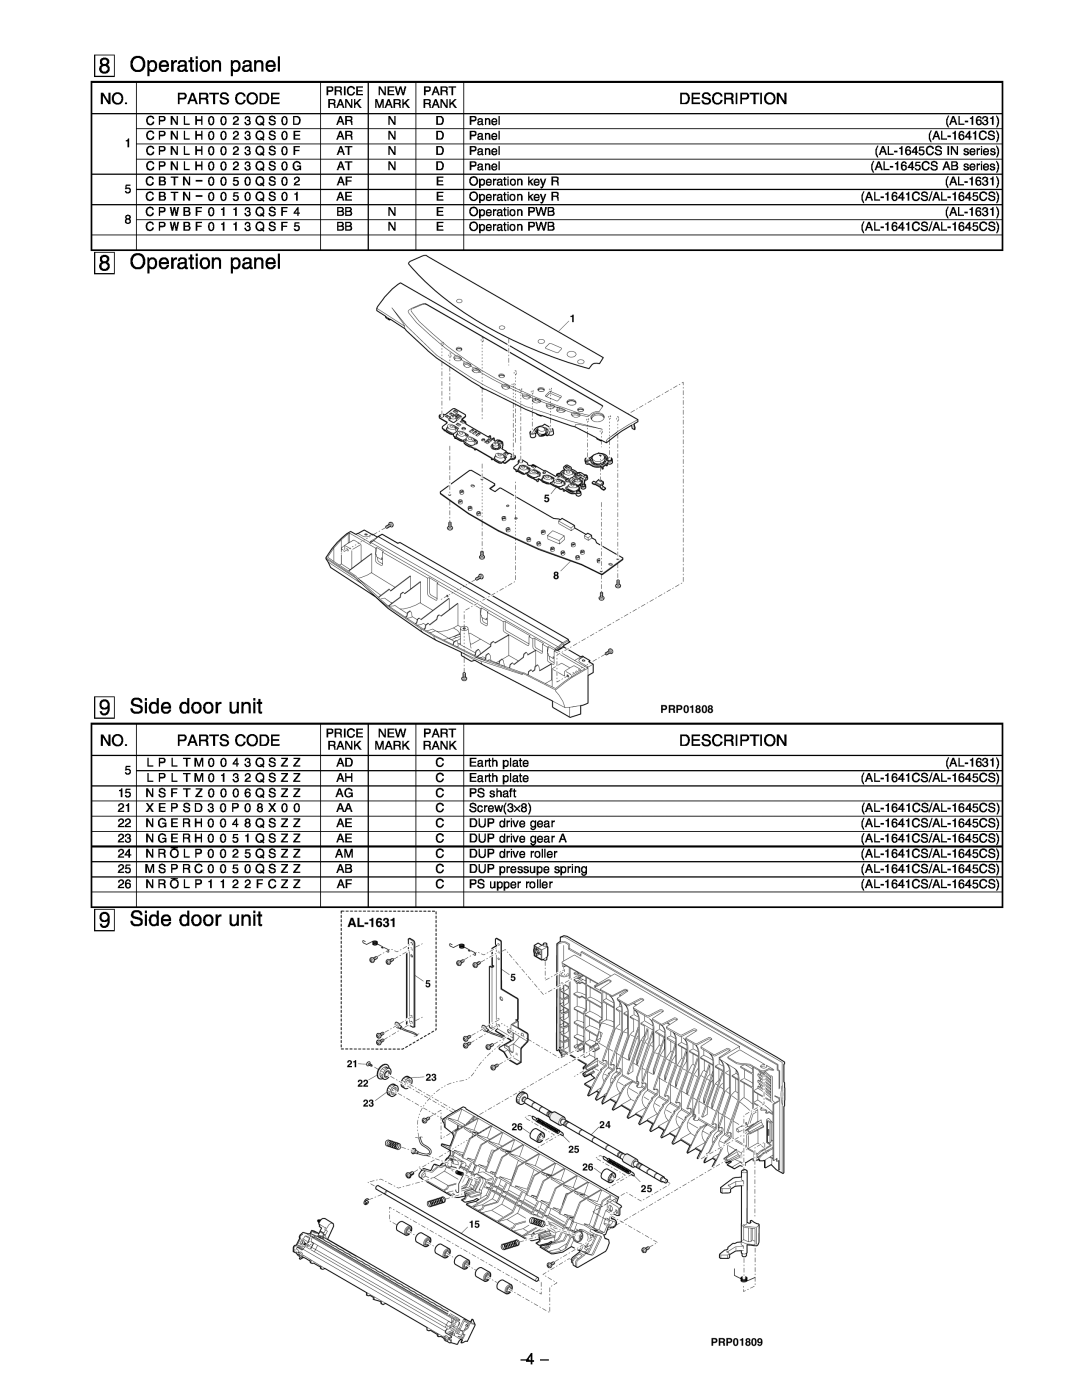 Sharp AL-1641CS, AL-1645CS service manual Operation panel, Side door unit, PRP01808, 2624, PRP01809 